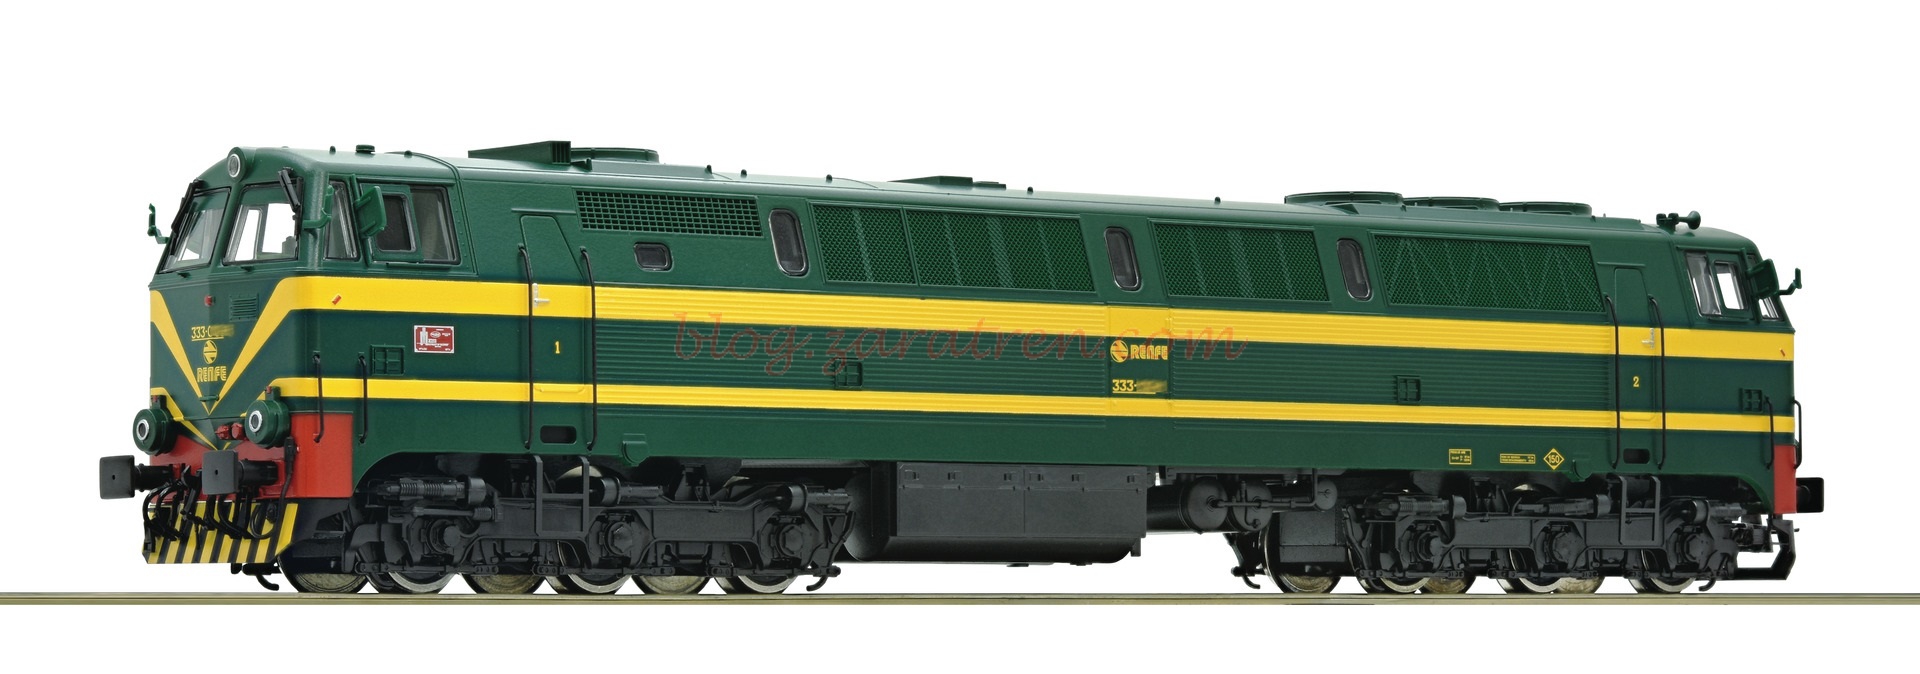 Roco – Locomotora Diesel 333, Verde amarillo, RENFE, Escala H0.